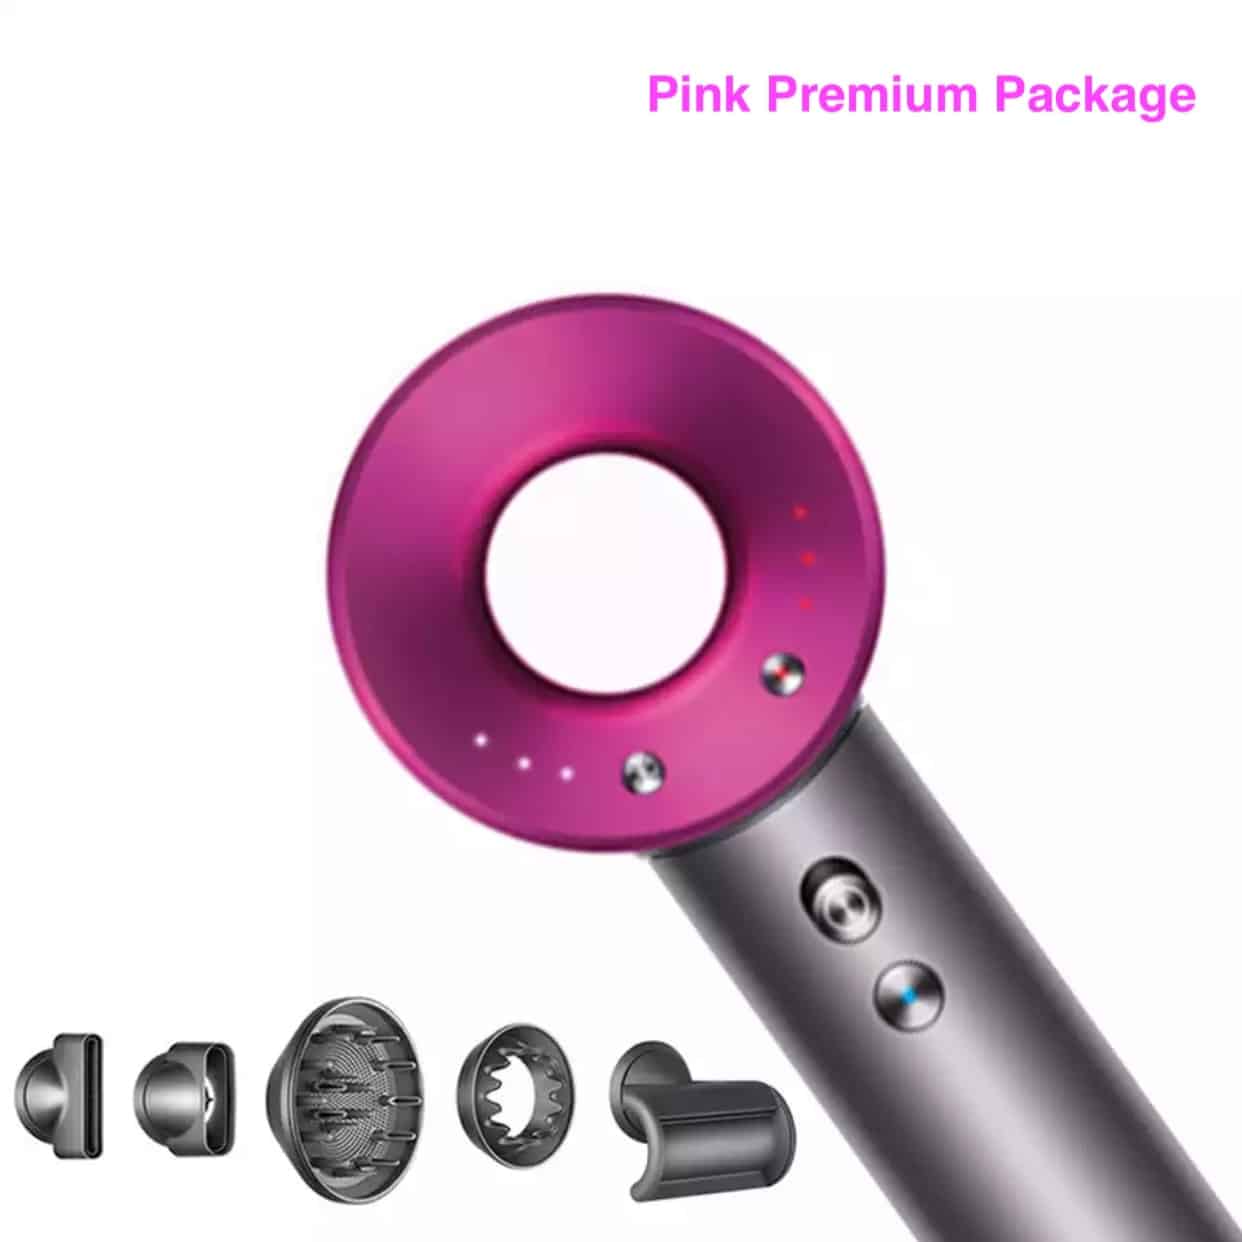 Pink Premium